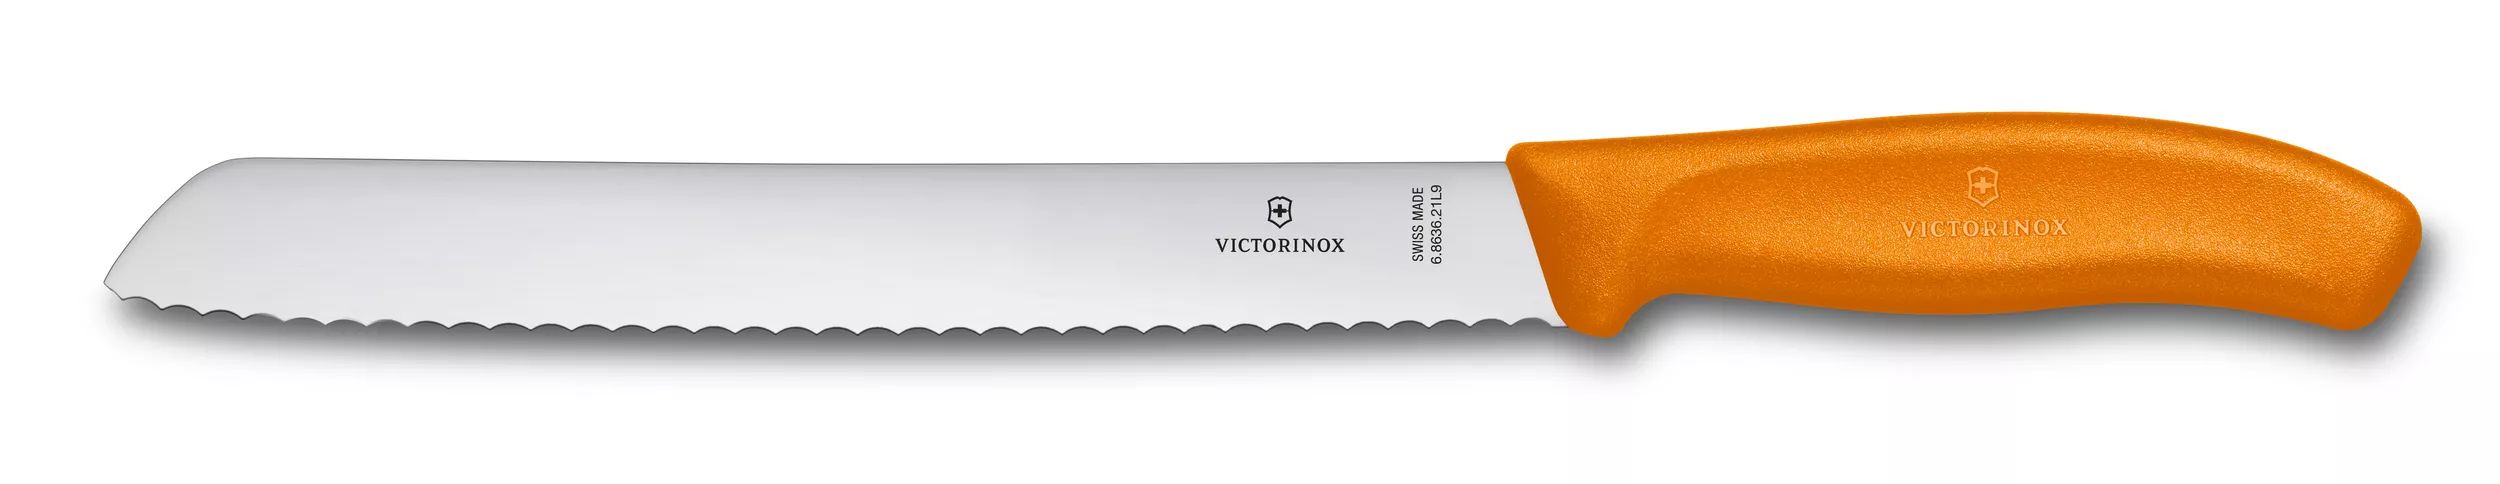 Swiss Classic Bread Knife-6.8636.21L9B